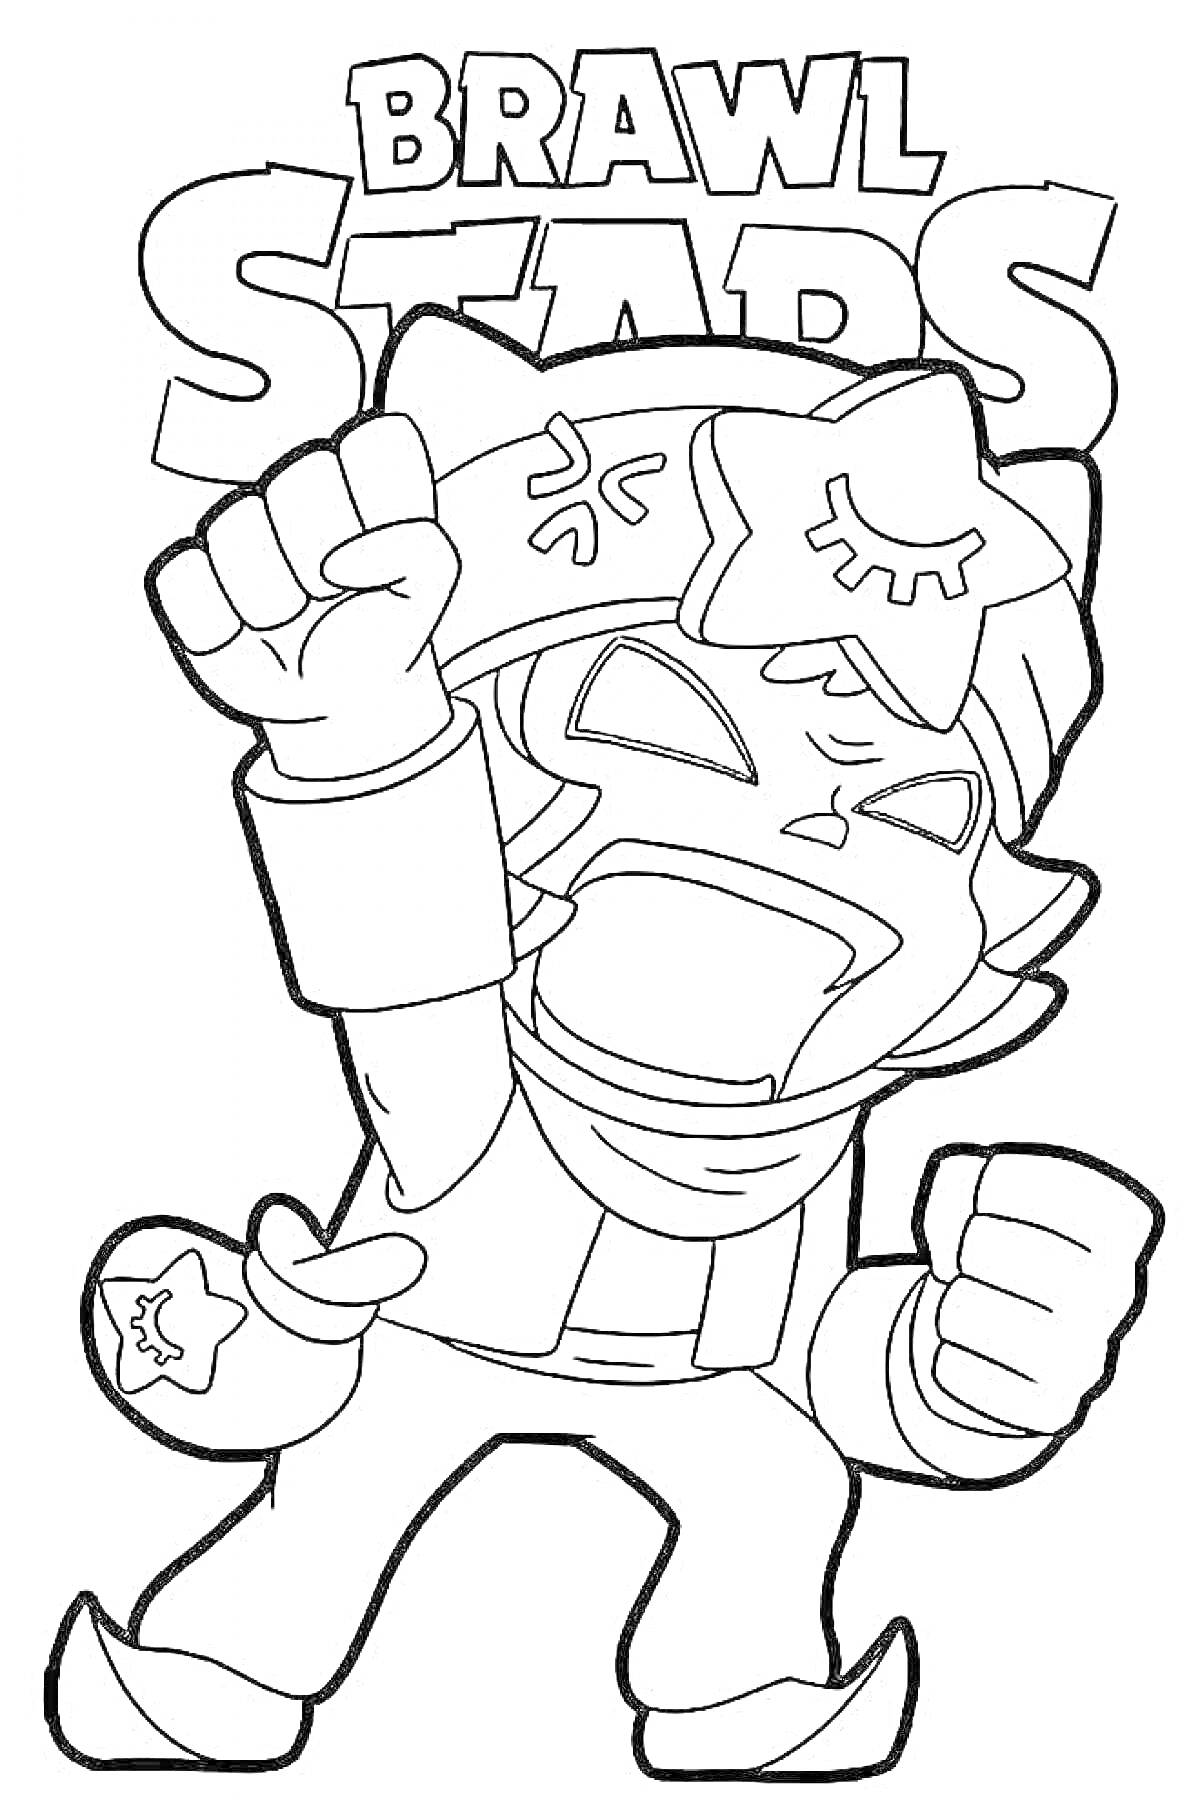 Раскраска Эдгар из Brawl Stars с поднятым кулаком и логотипом игры